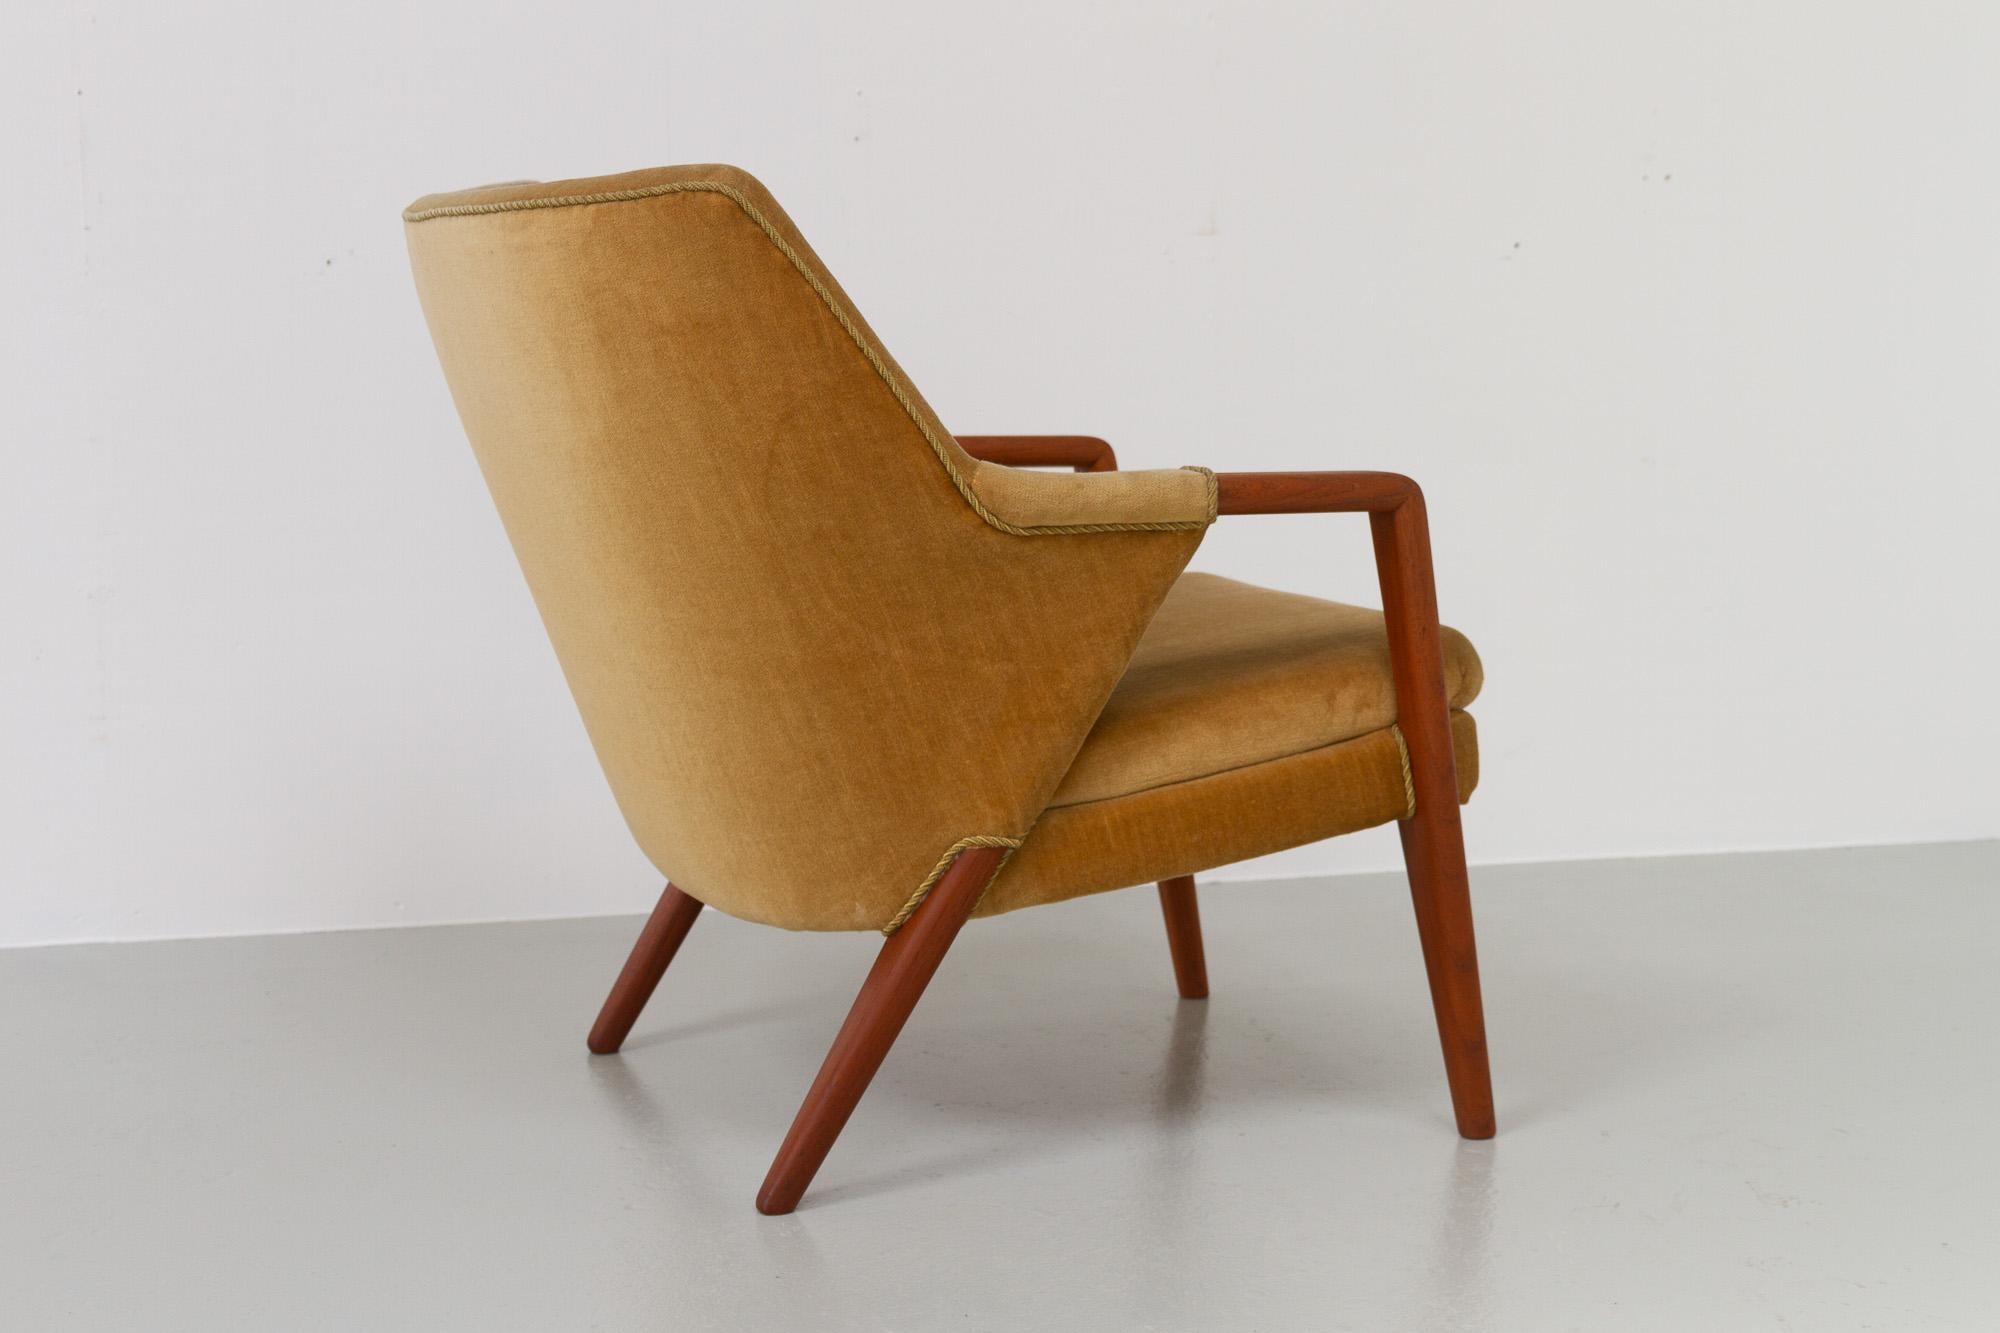 Danish Modern Banana Sofa and Chair by Kurt Olsen for Slagelse Møbelværk, 1950s For Sale 2